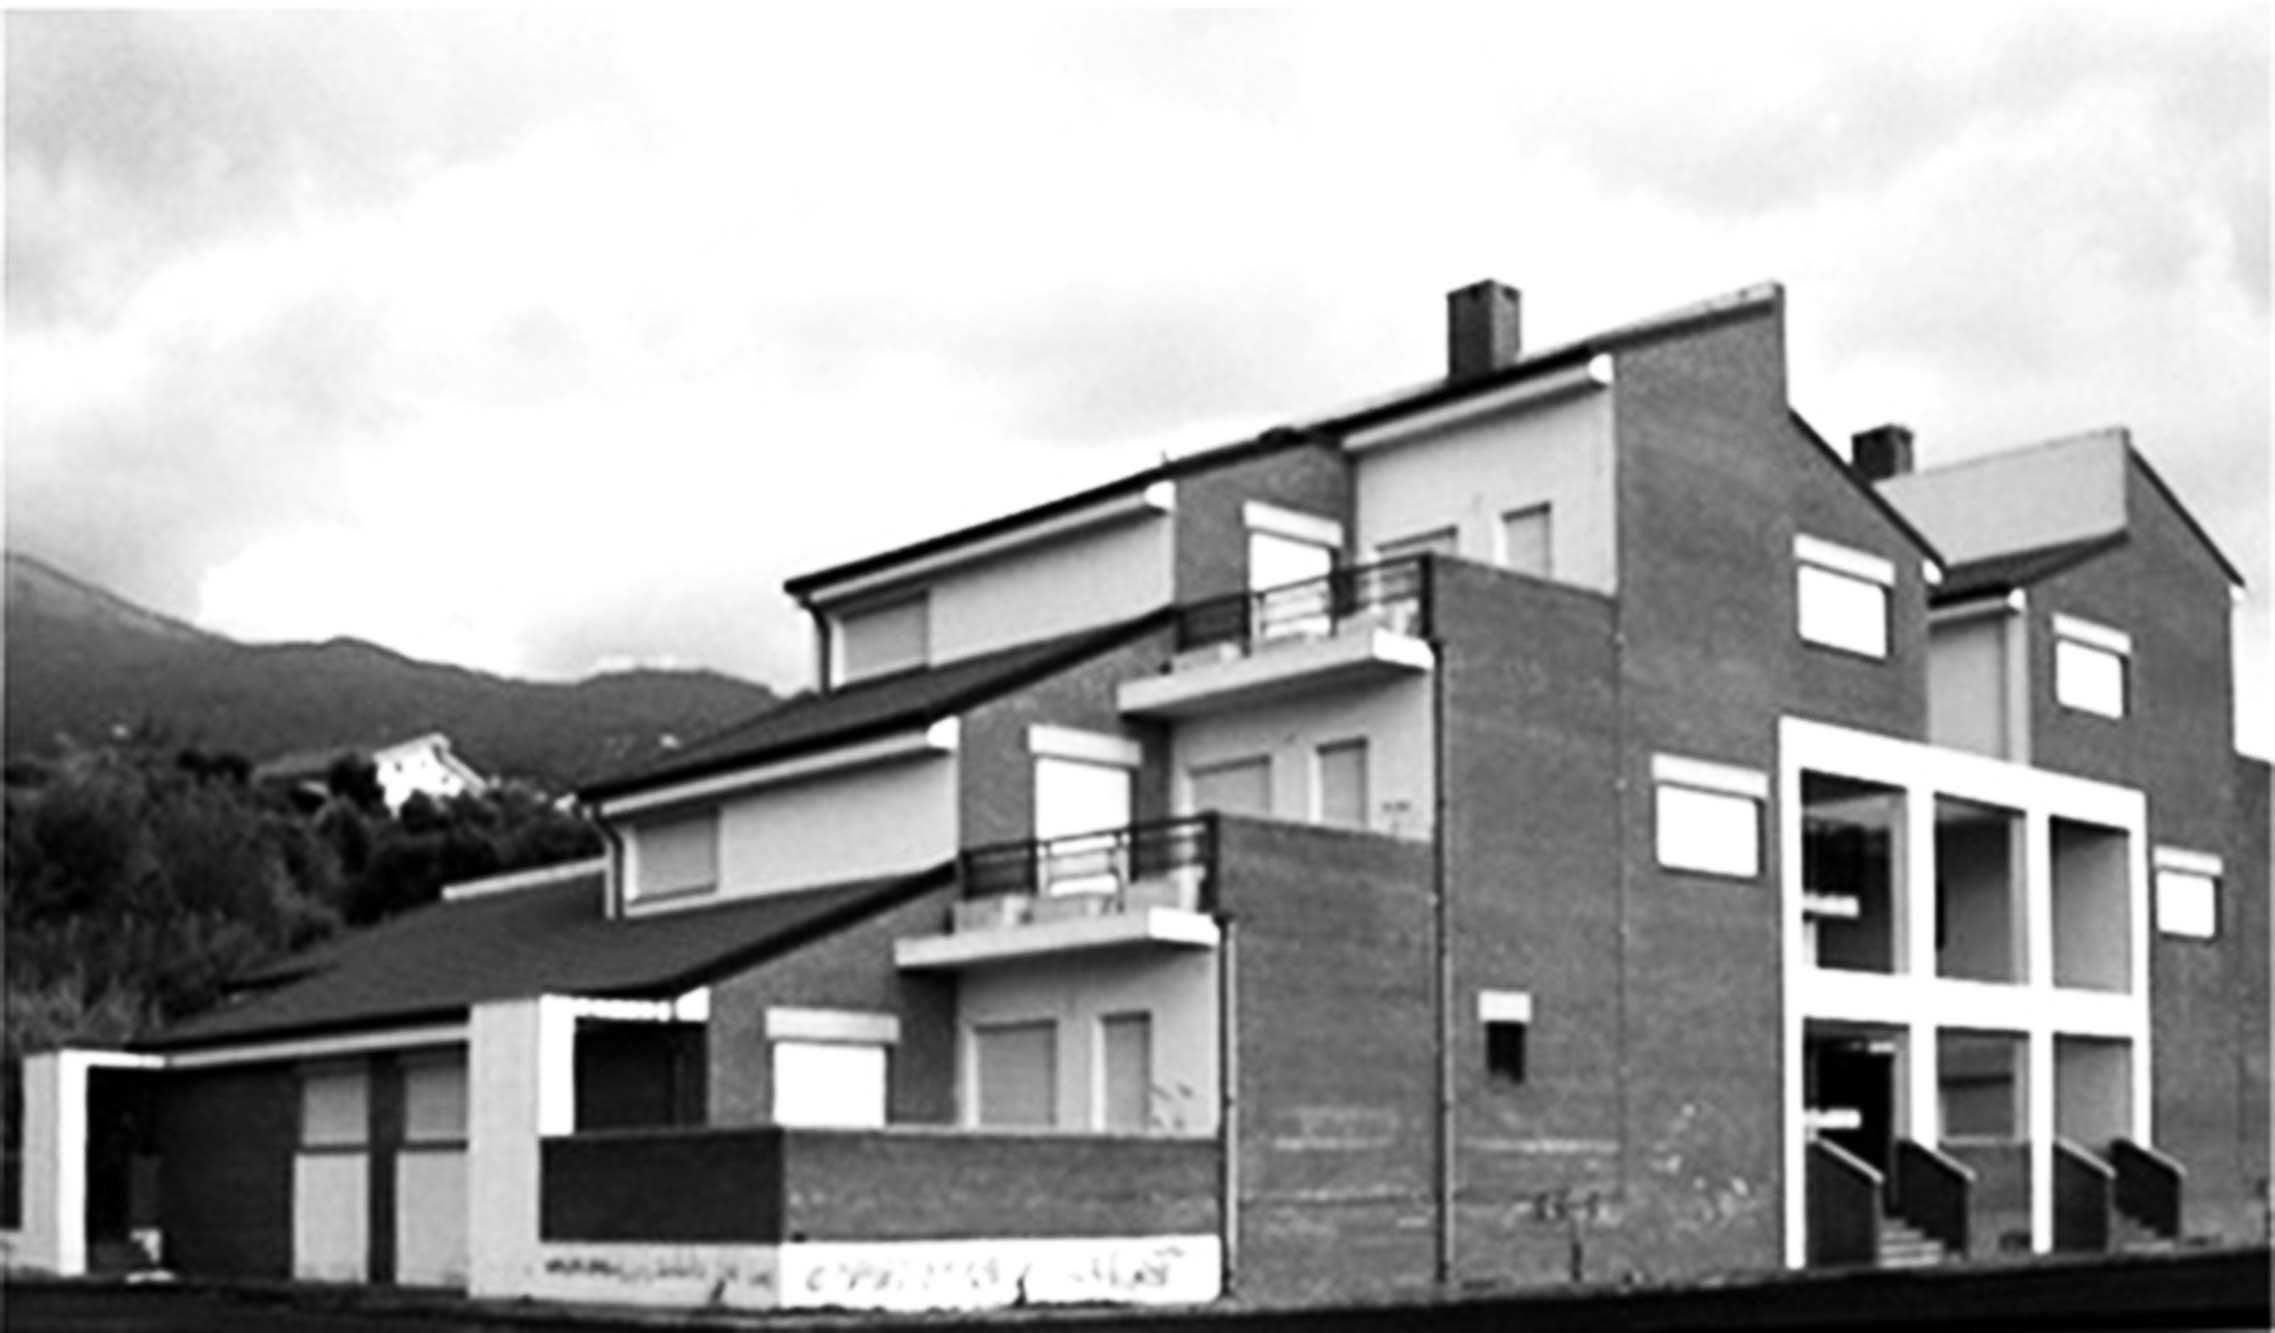 13 - Intervento di edilizia abitativa a Belvedere (CS), per ATERP Cosenza - Vista esterna